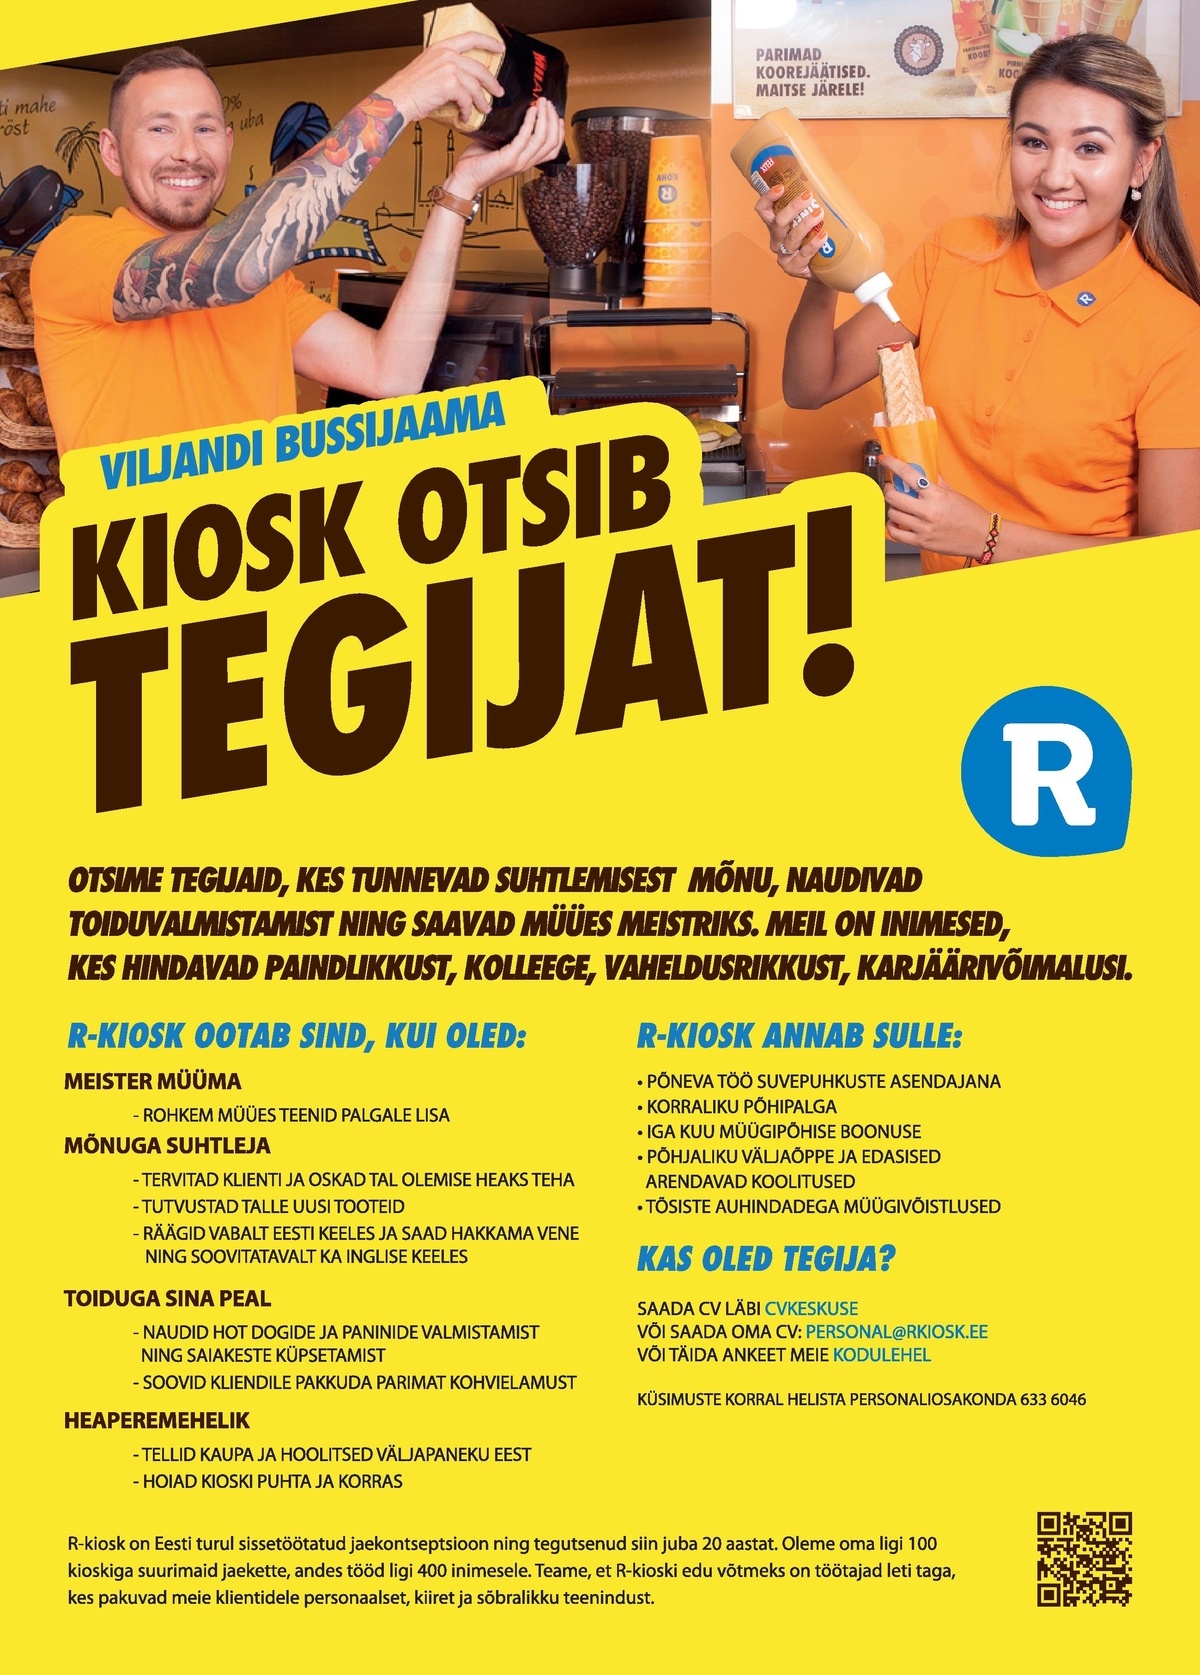 AS R-Kiosk Estonia Klienditeenindajat suveperioodiks Viljandi Bussijaama R-kioskisse